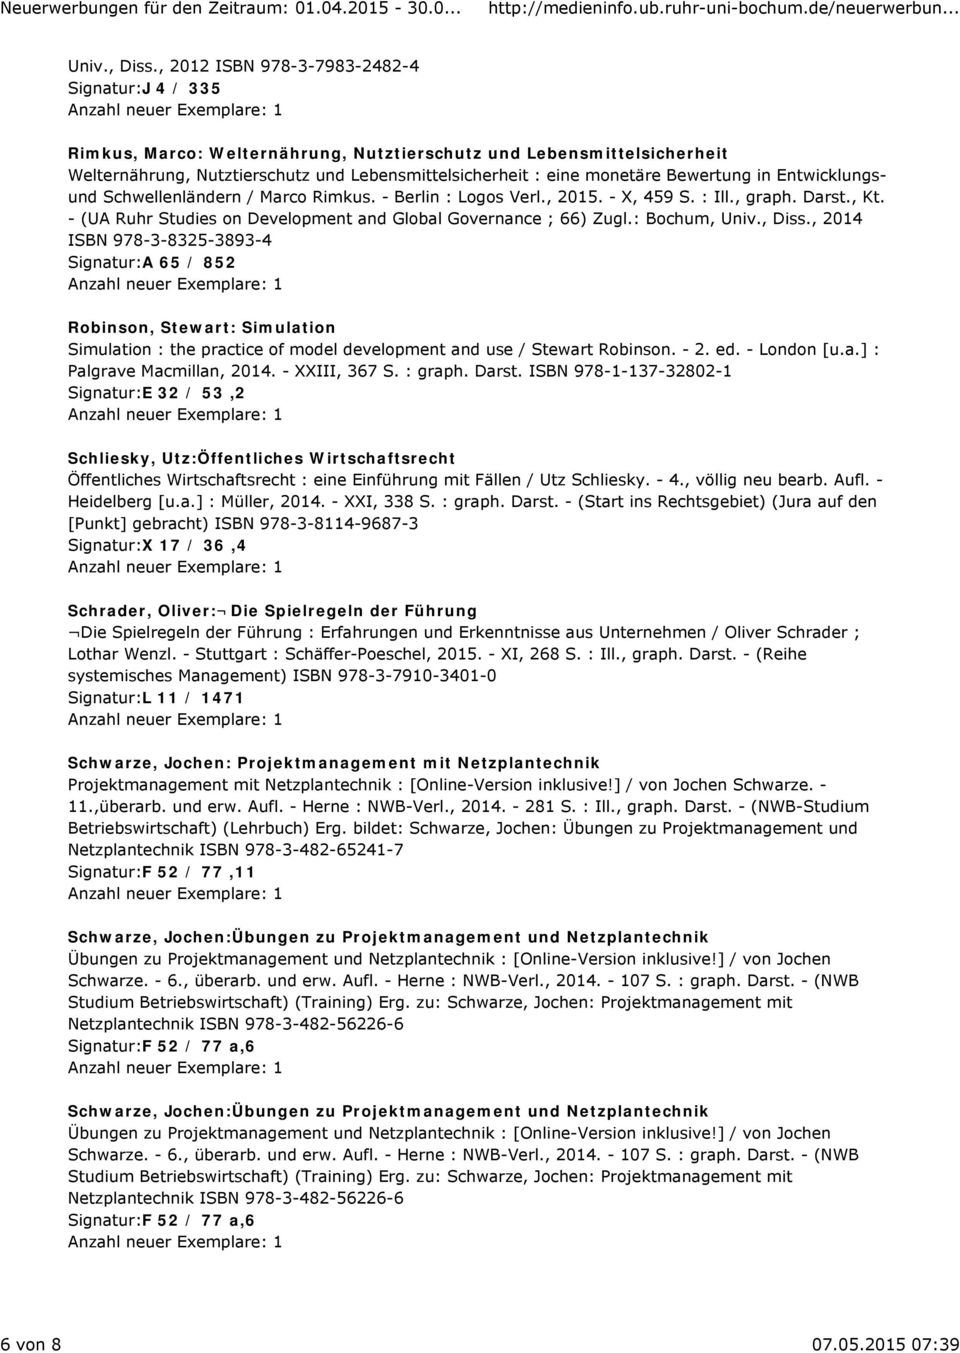 Bewertung in Entwicklungsund Schwellenländern / Marco Rimkus. - Berlin : Logos Verl., 2015. - X, 459 S. : Ill., graph. Darst., Kt. - (UA Ruhr Studies on Development and Global Governance ; 66) Zugl.